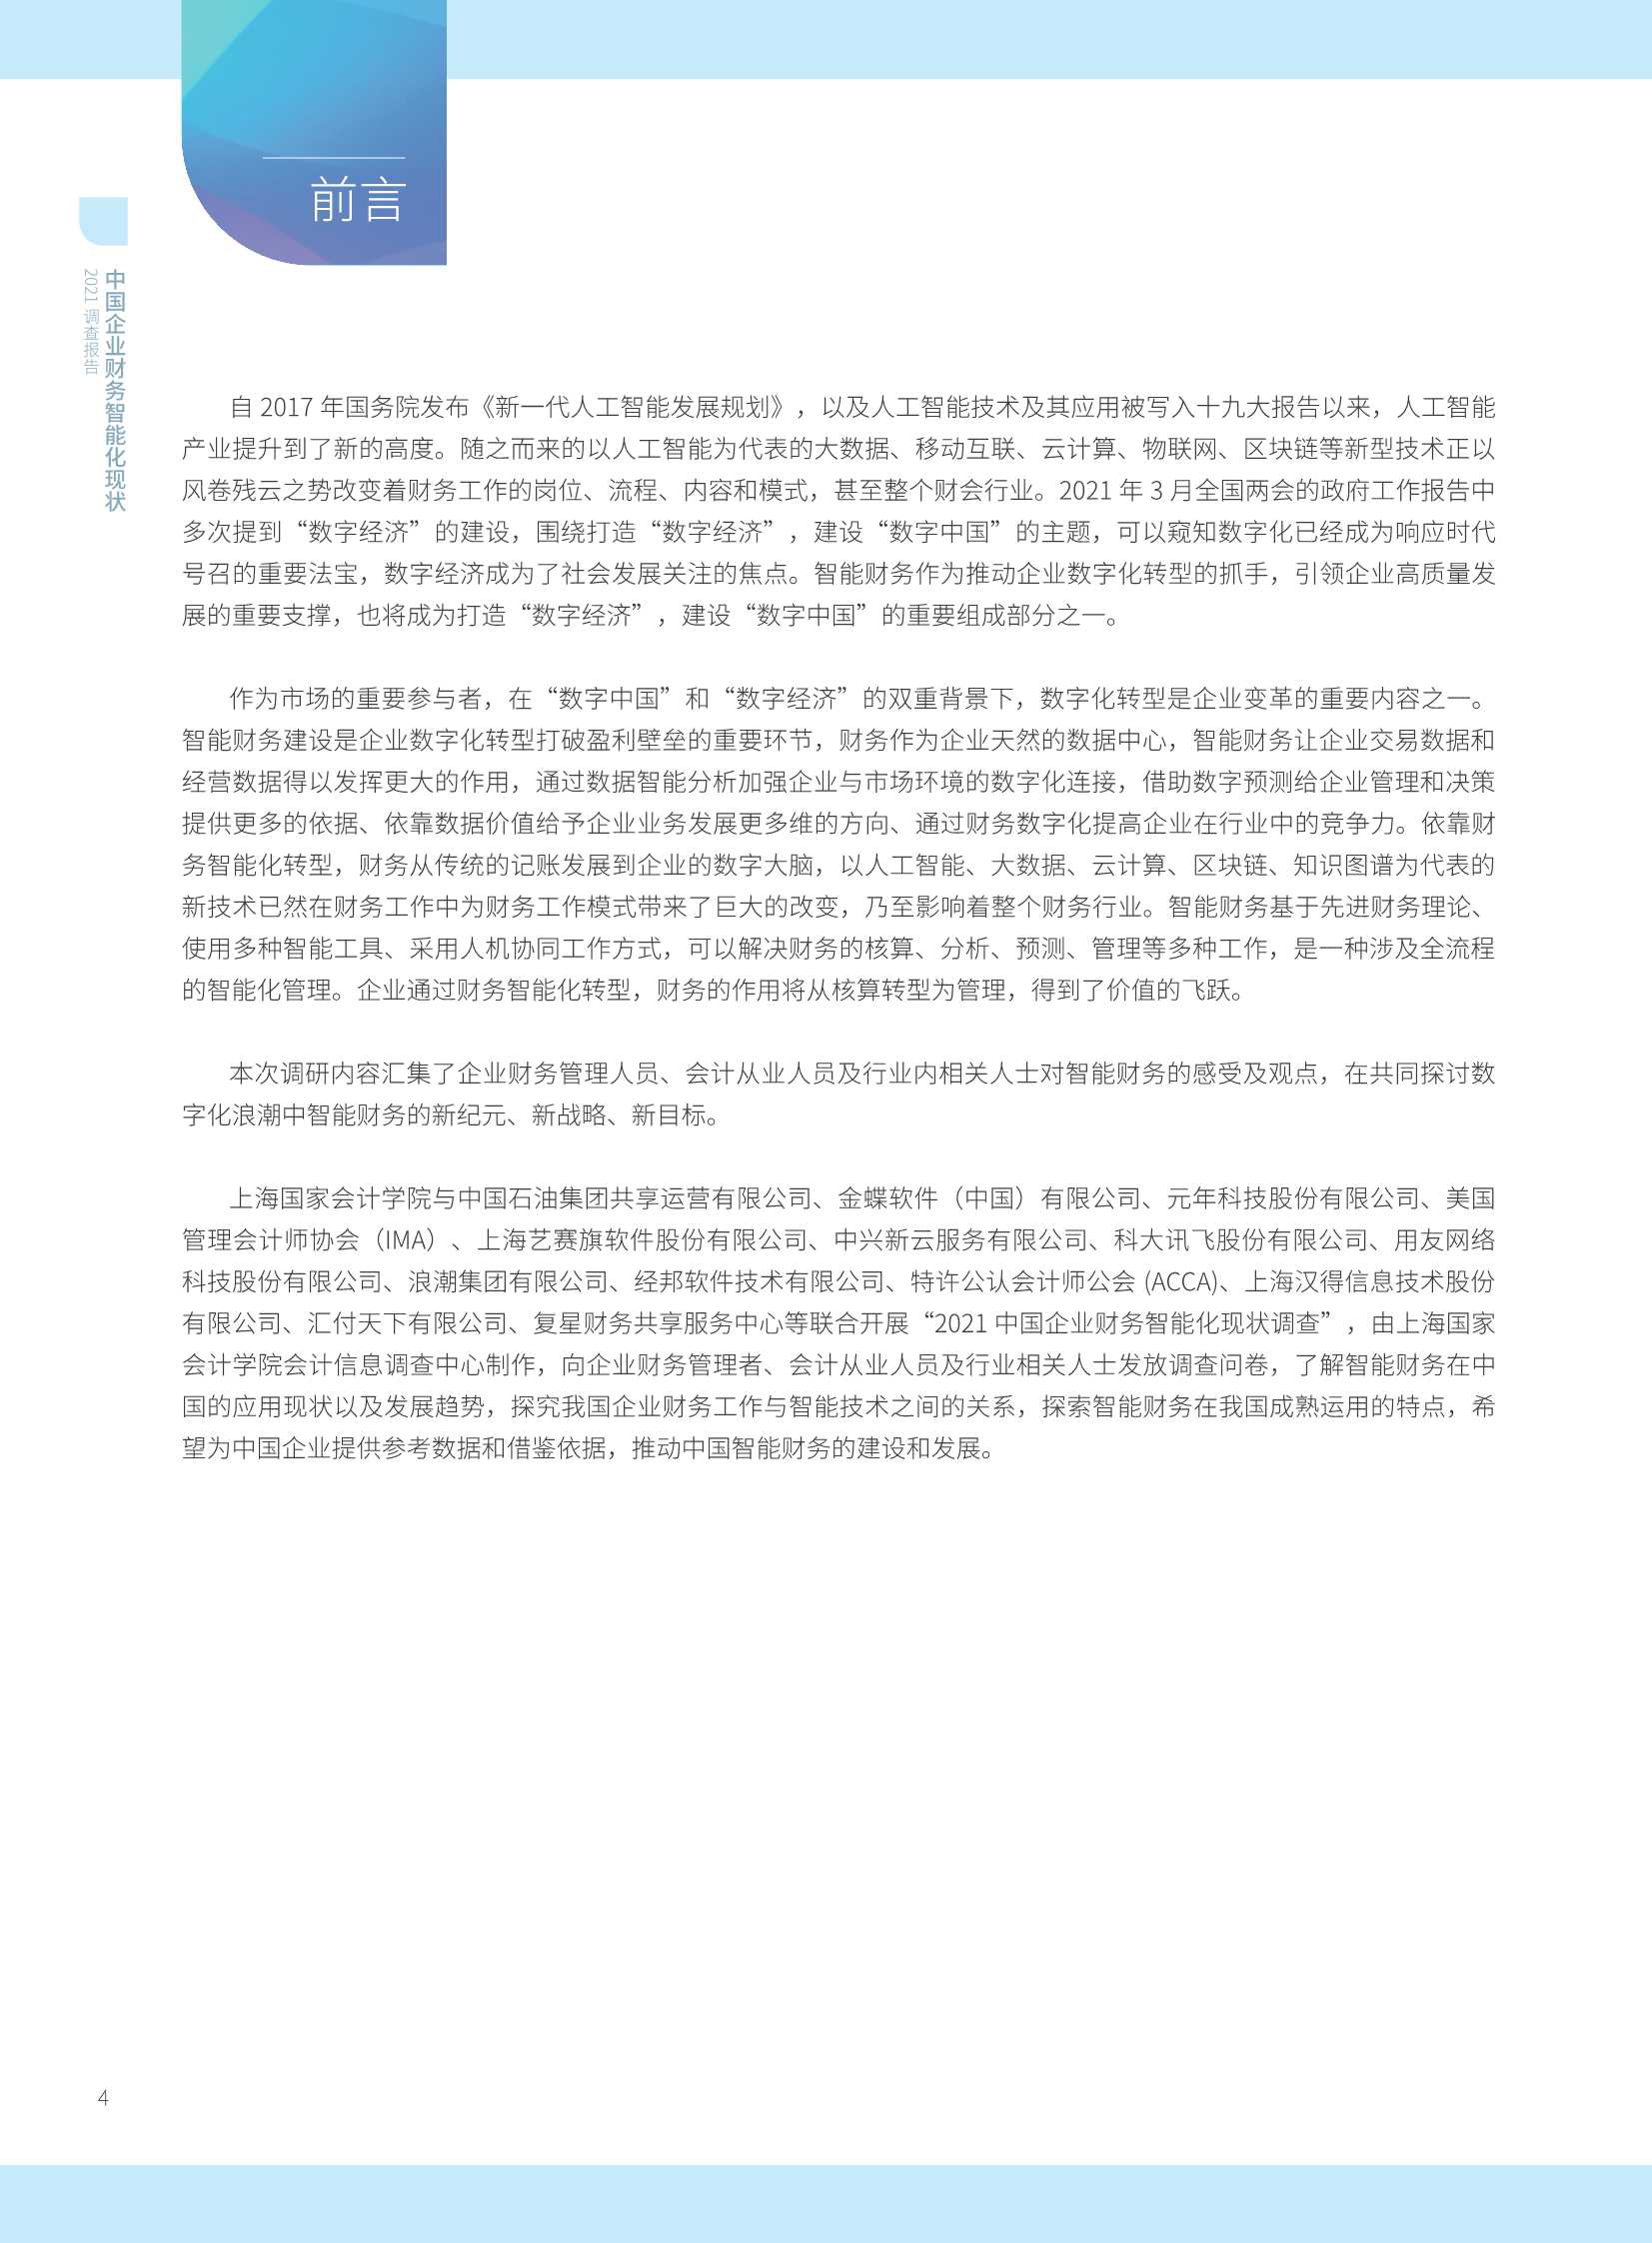 2021年中国智能财务应用现状调查报告